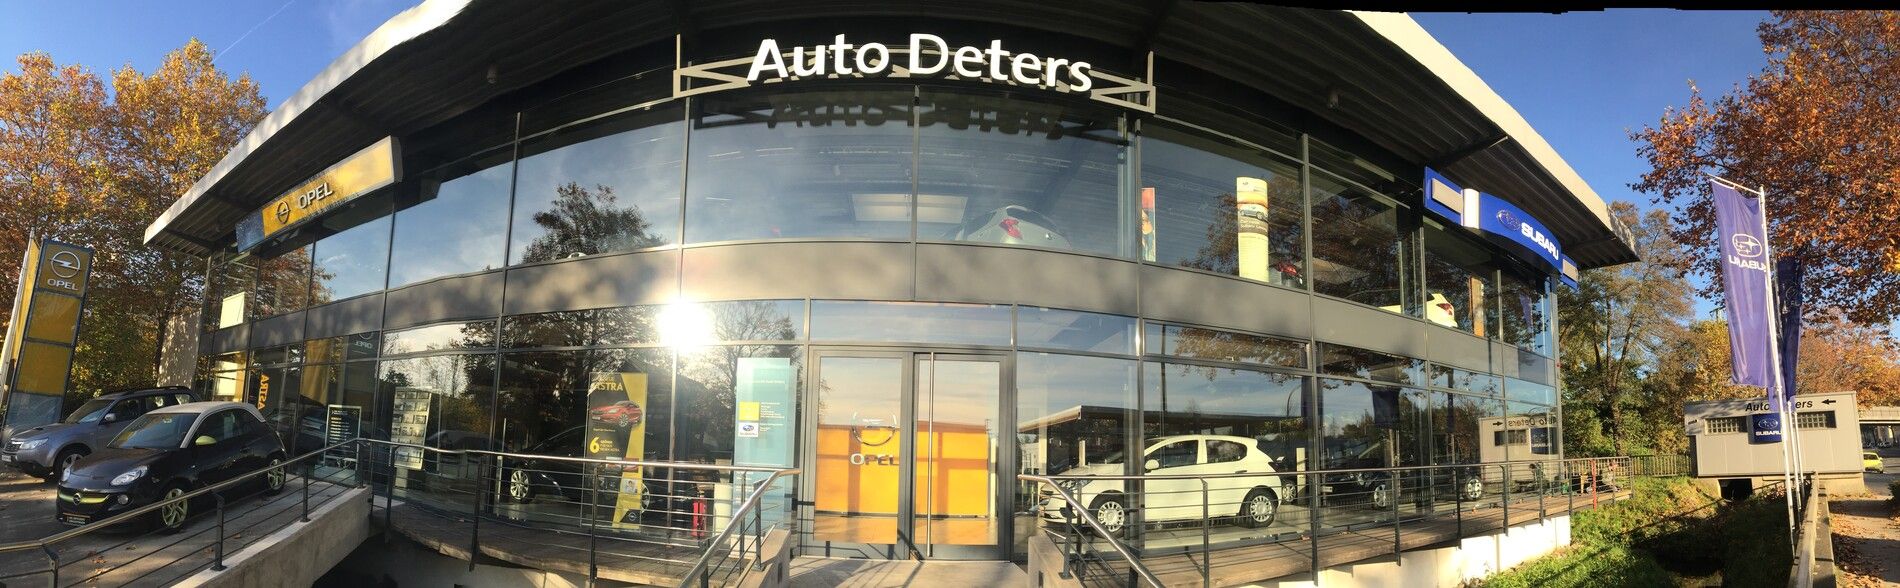 Auto Deters - Download - Auto Deters GmbH & Co. KG